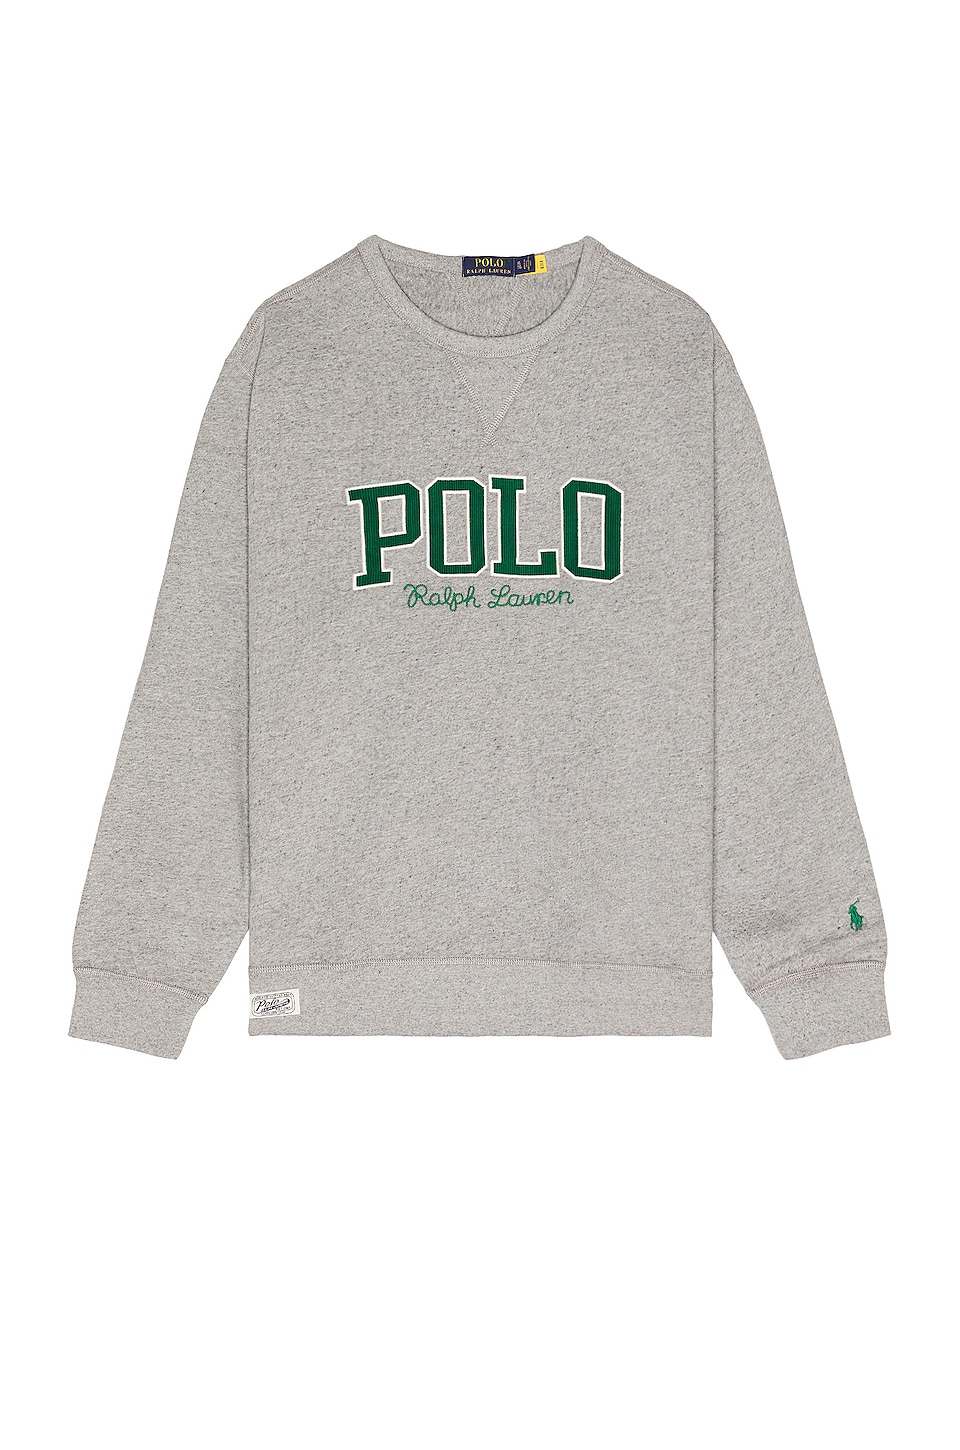 Polo Ralph Lauren Graphic Fleece Sweatshirt in Vintage Salt & Pepper  Heather | REVOLVE